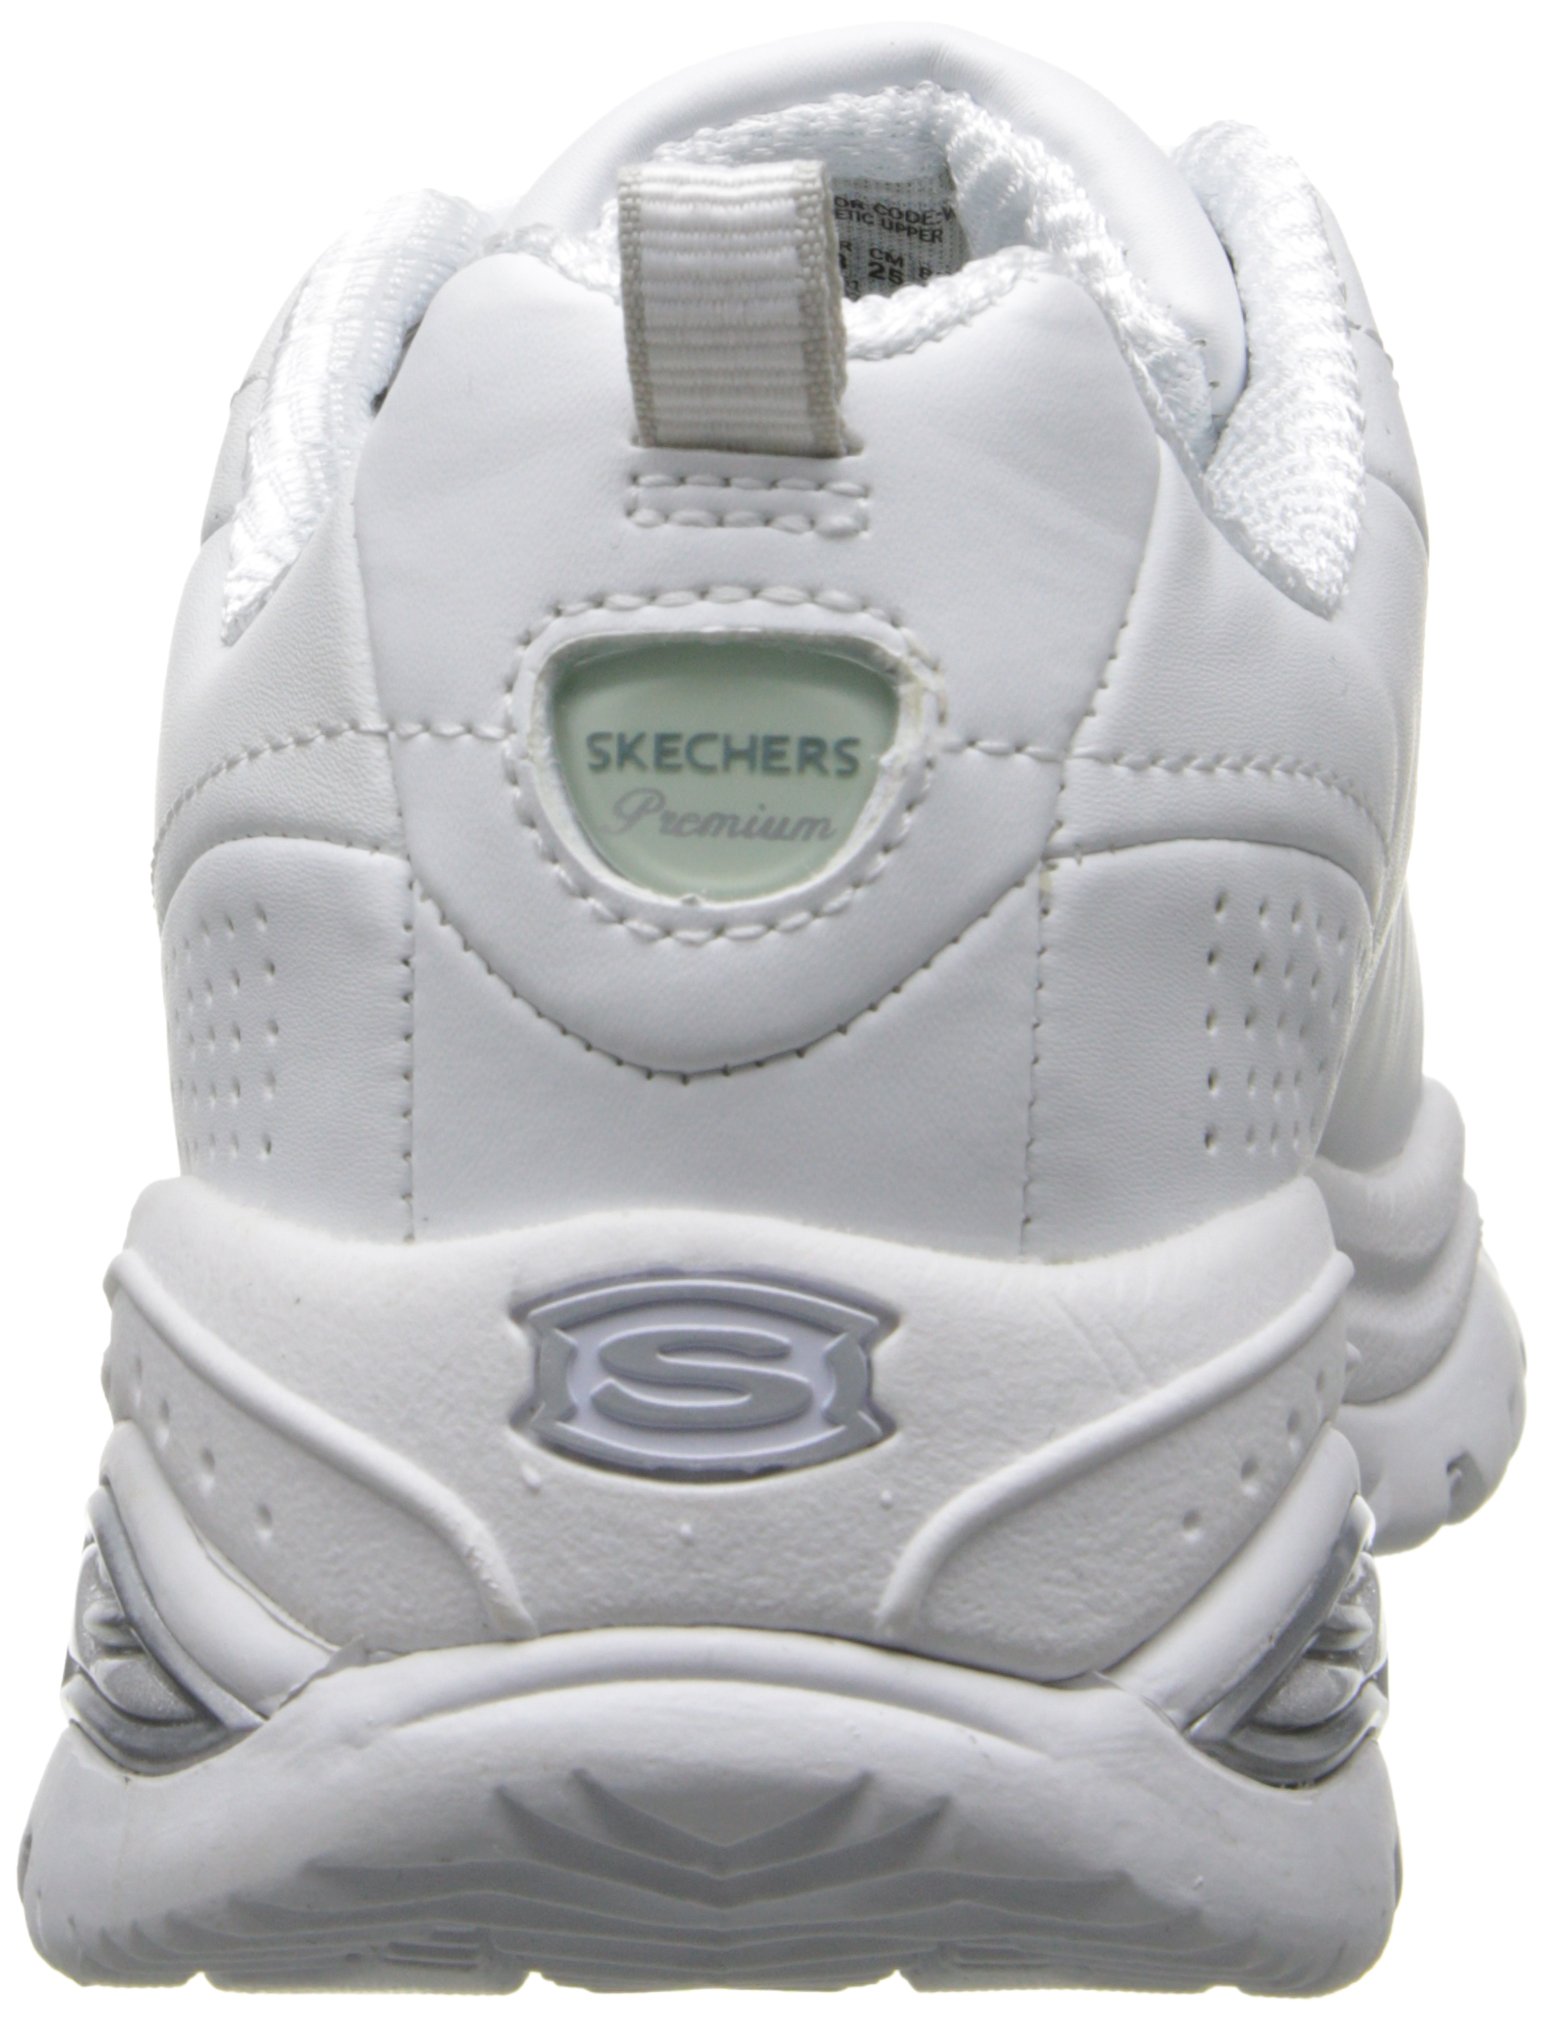 Skechers Sport Women's Premium Sneaker